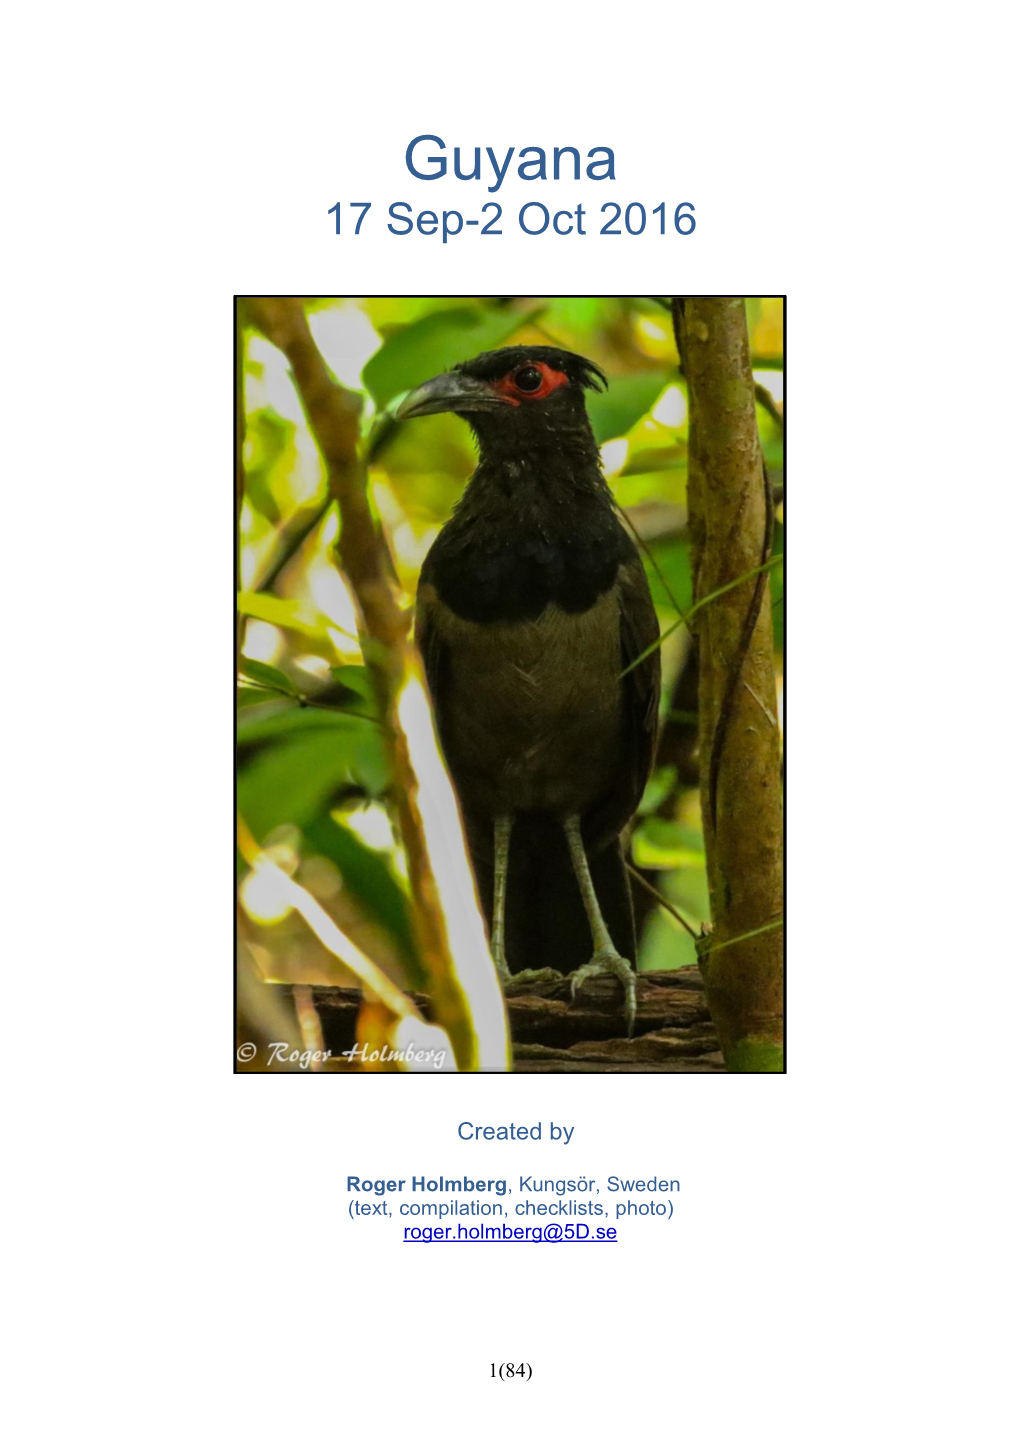 Guyana 17 Sep-2 Oct 2016